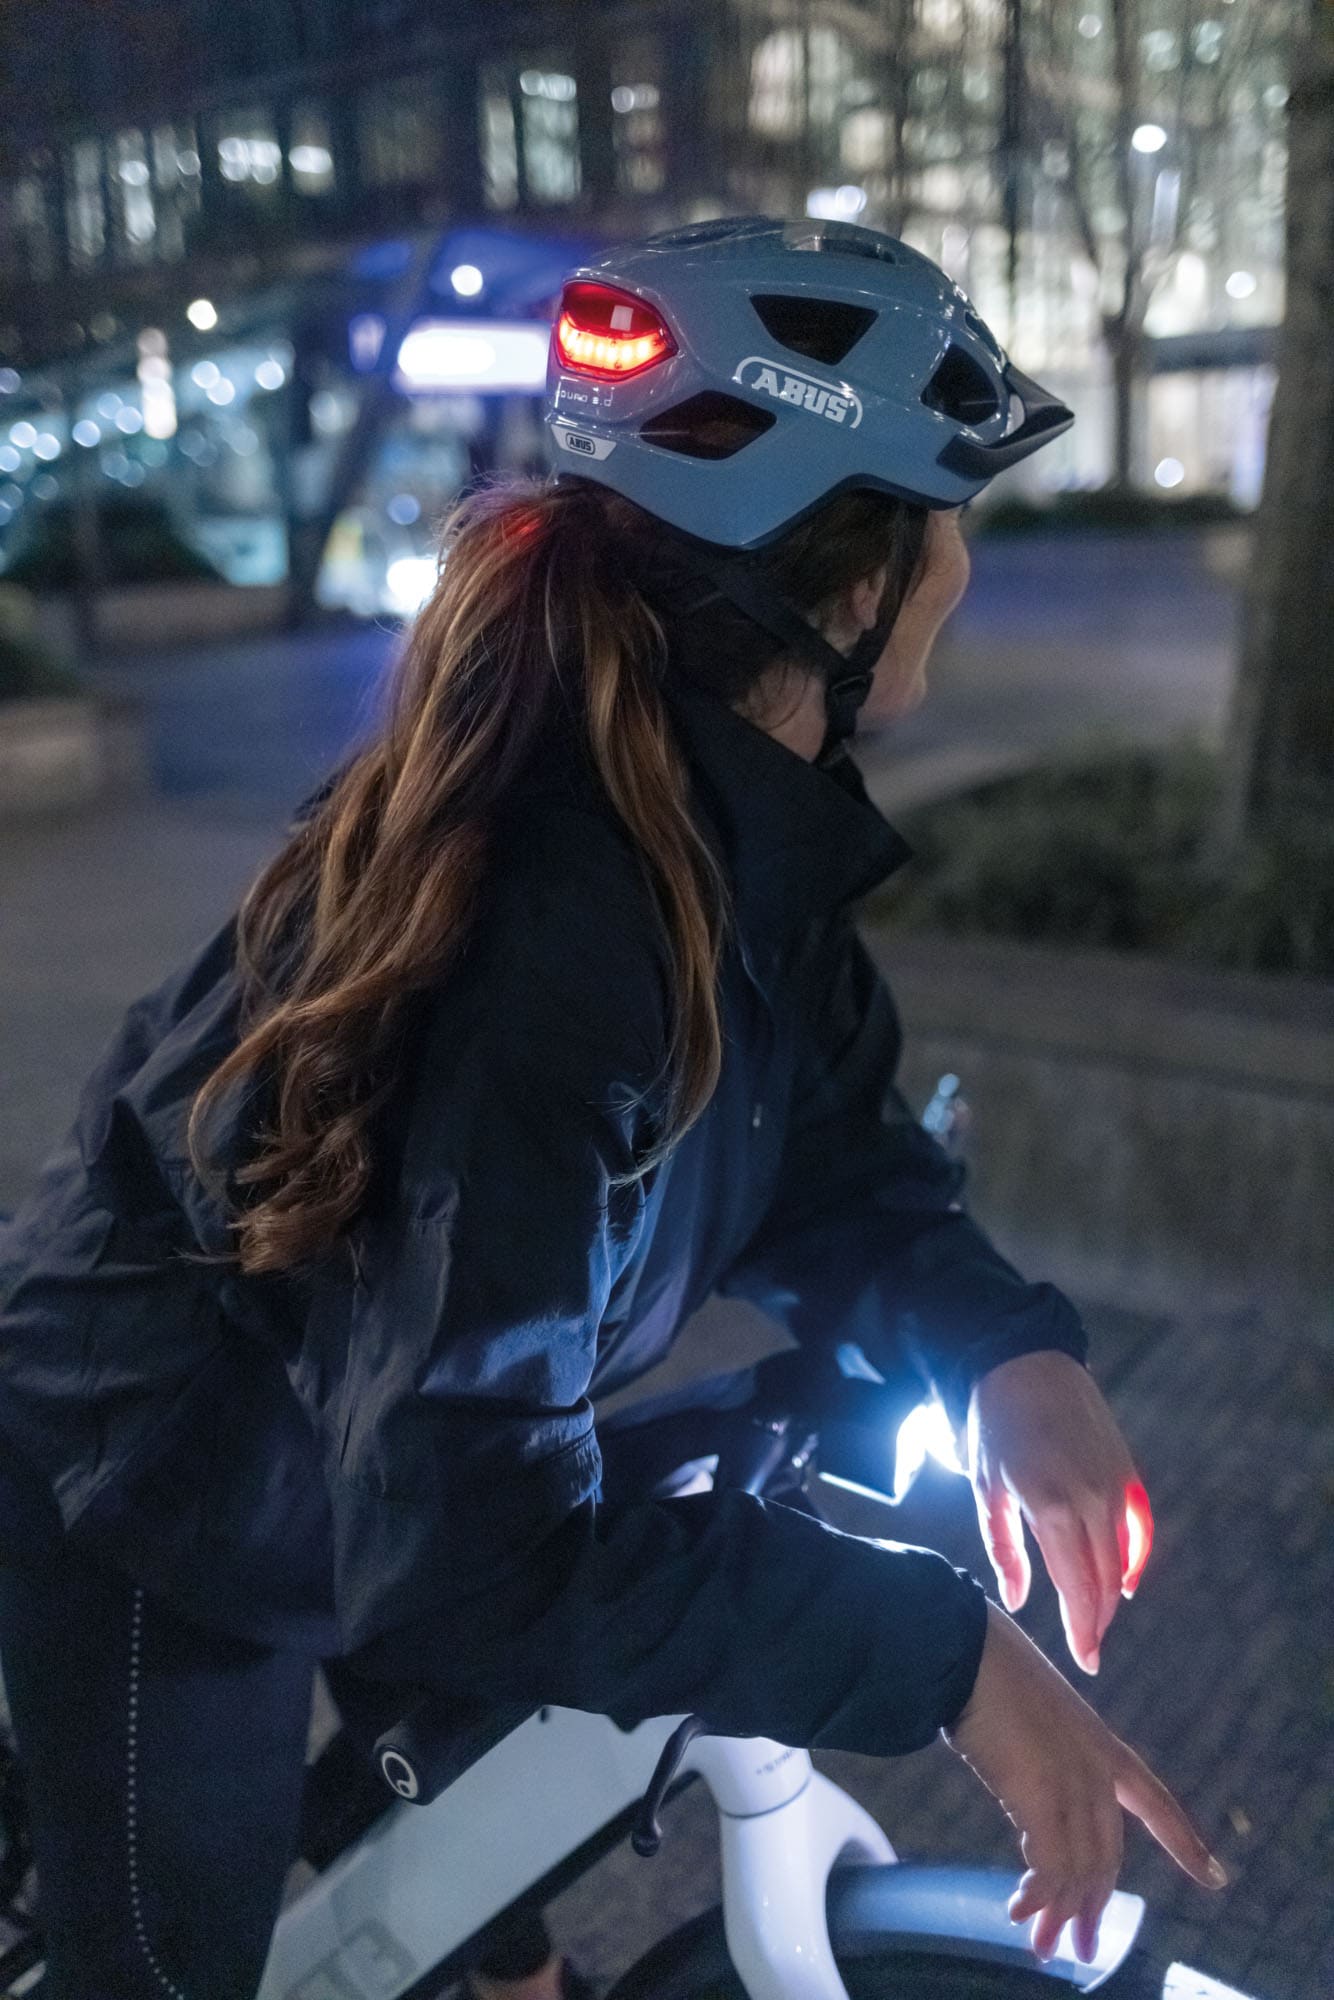 ABUS Fahrradbeleuchtung »Rücklicht Aduro 3.0«